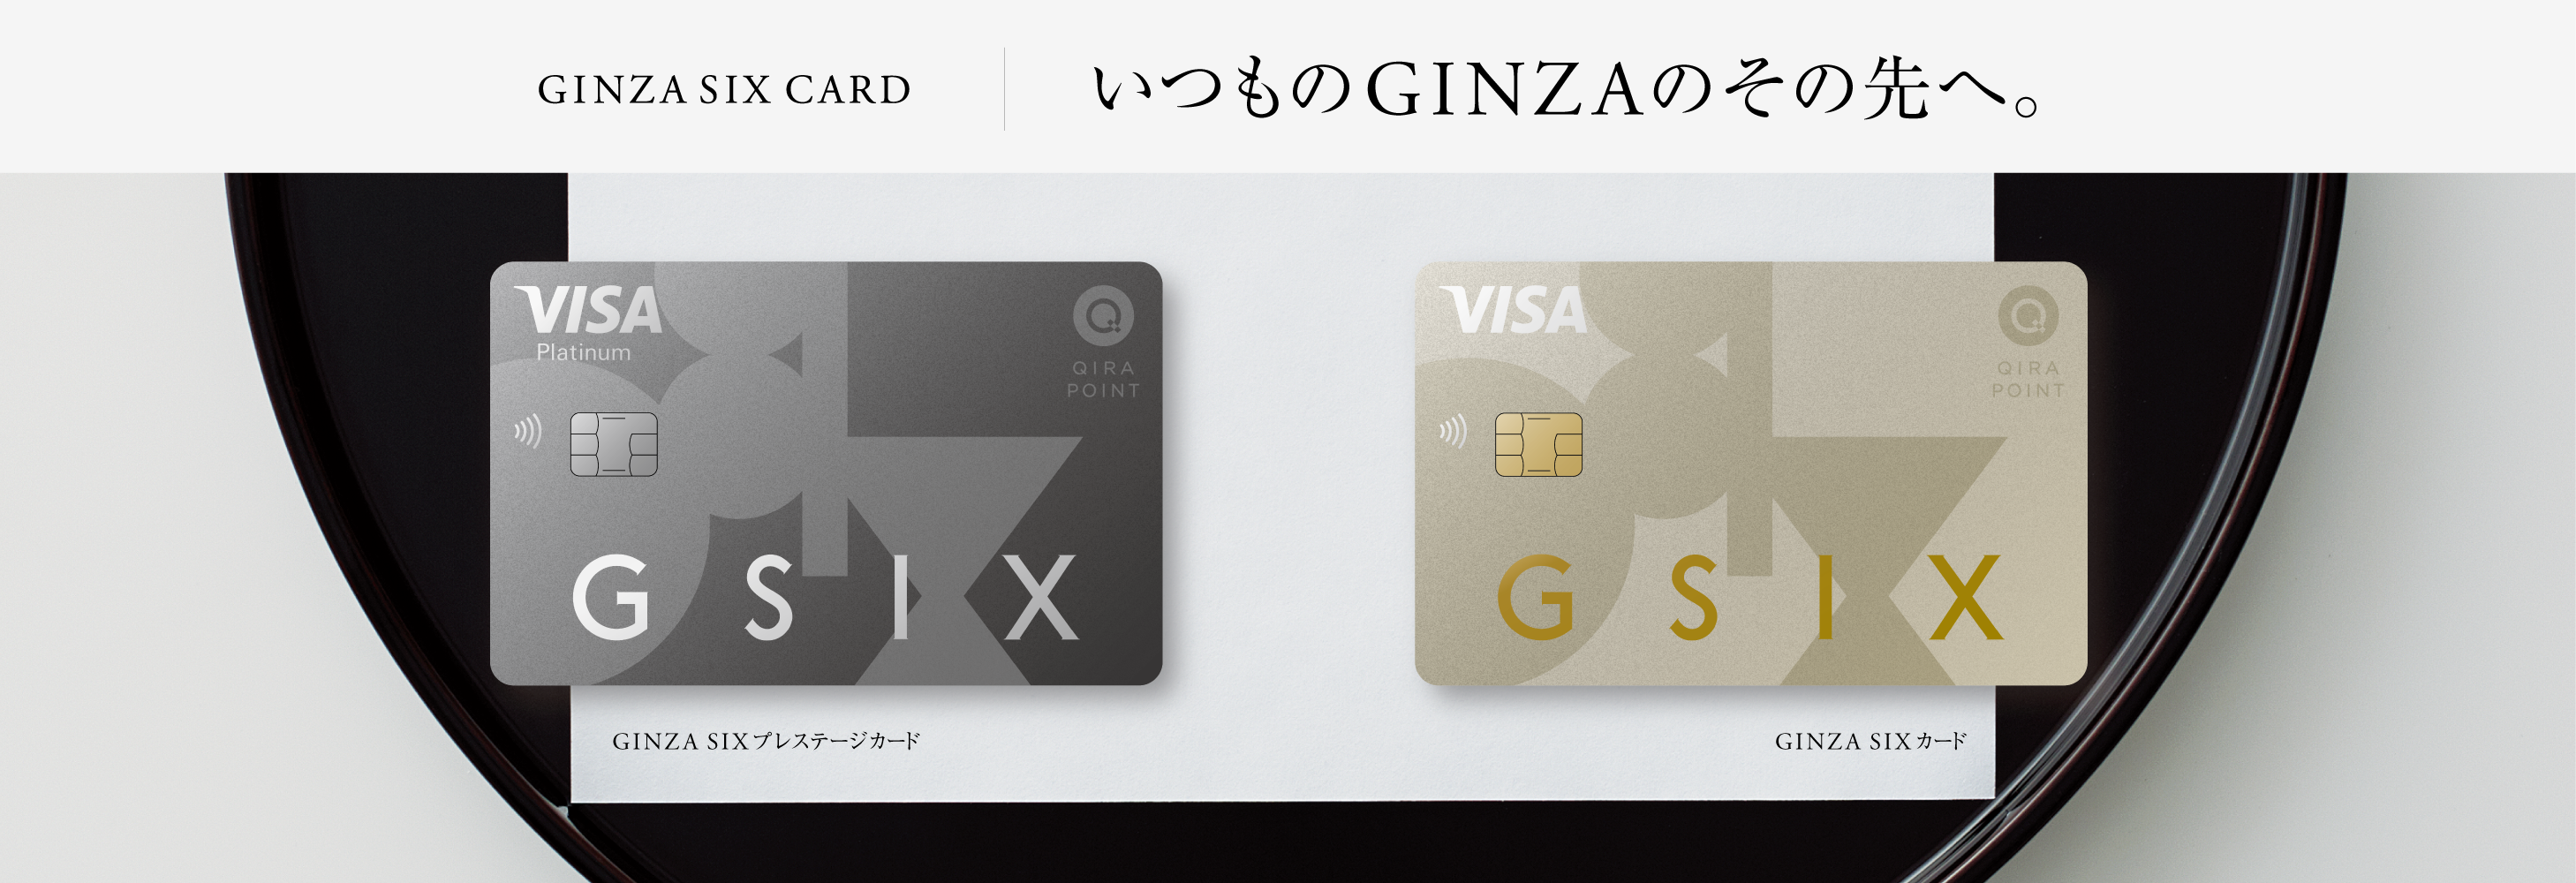 GINZA SIX CARD いつものGINZAのその先へ。